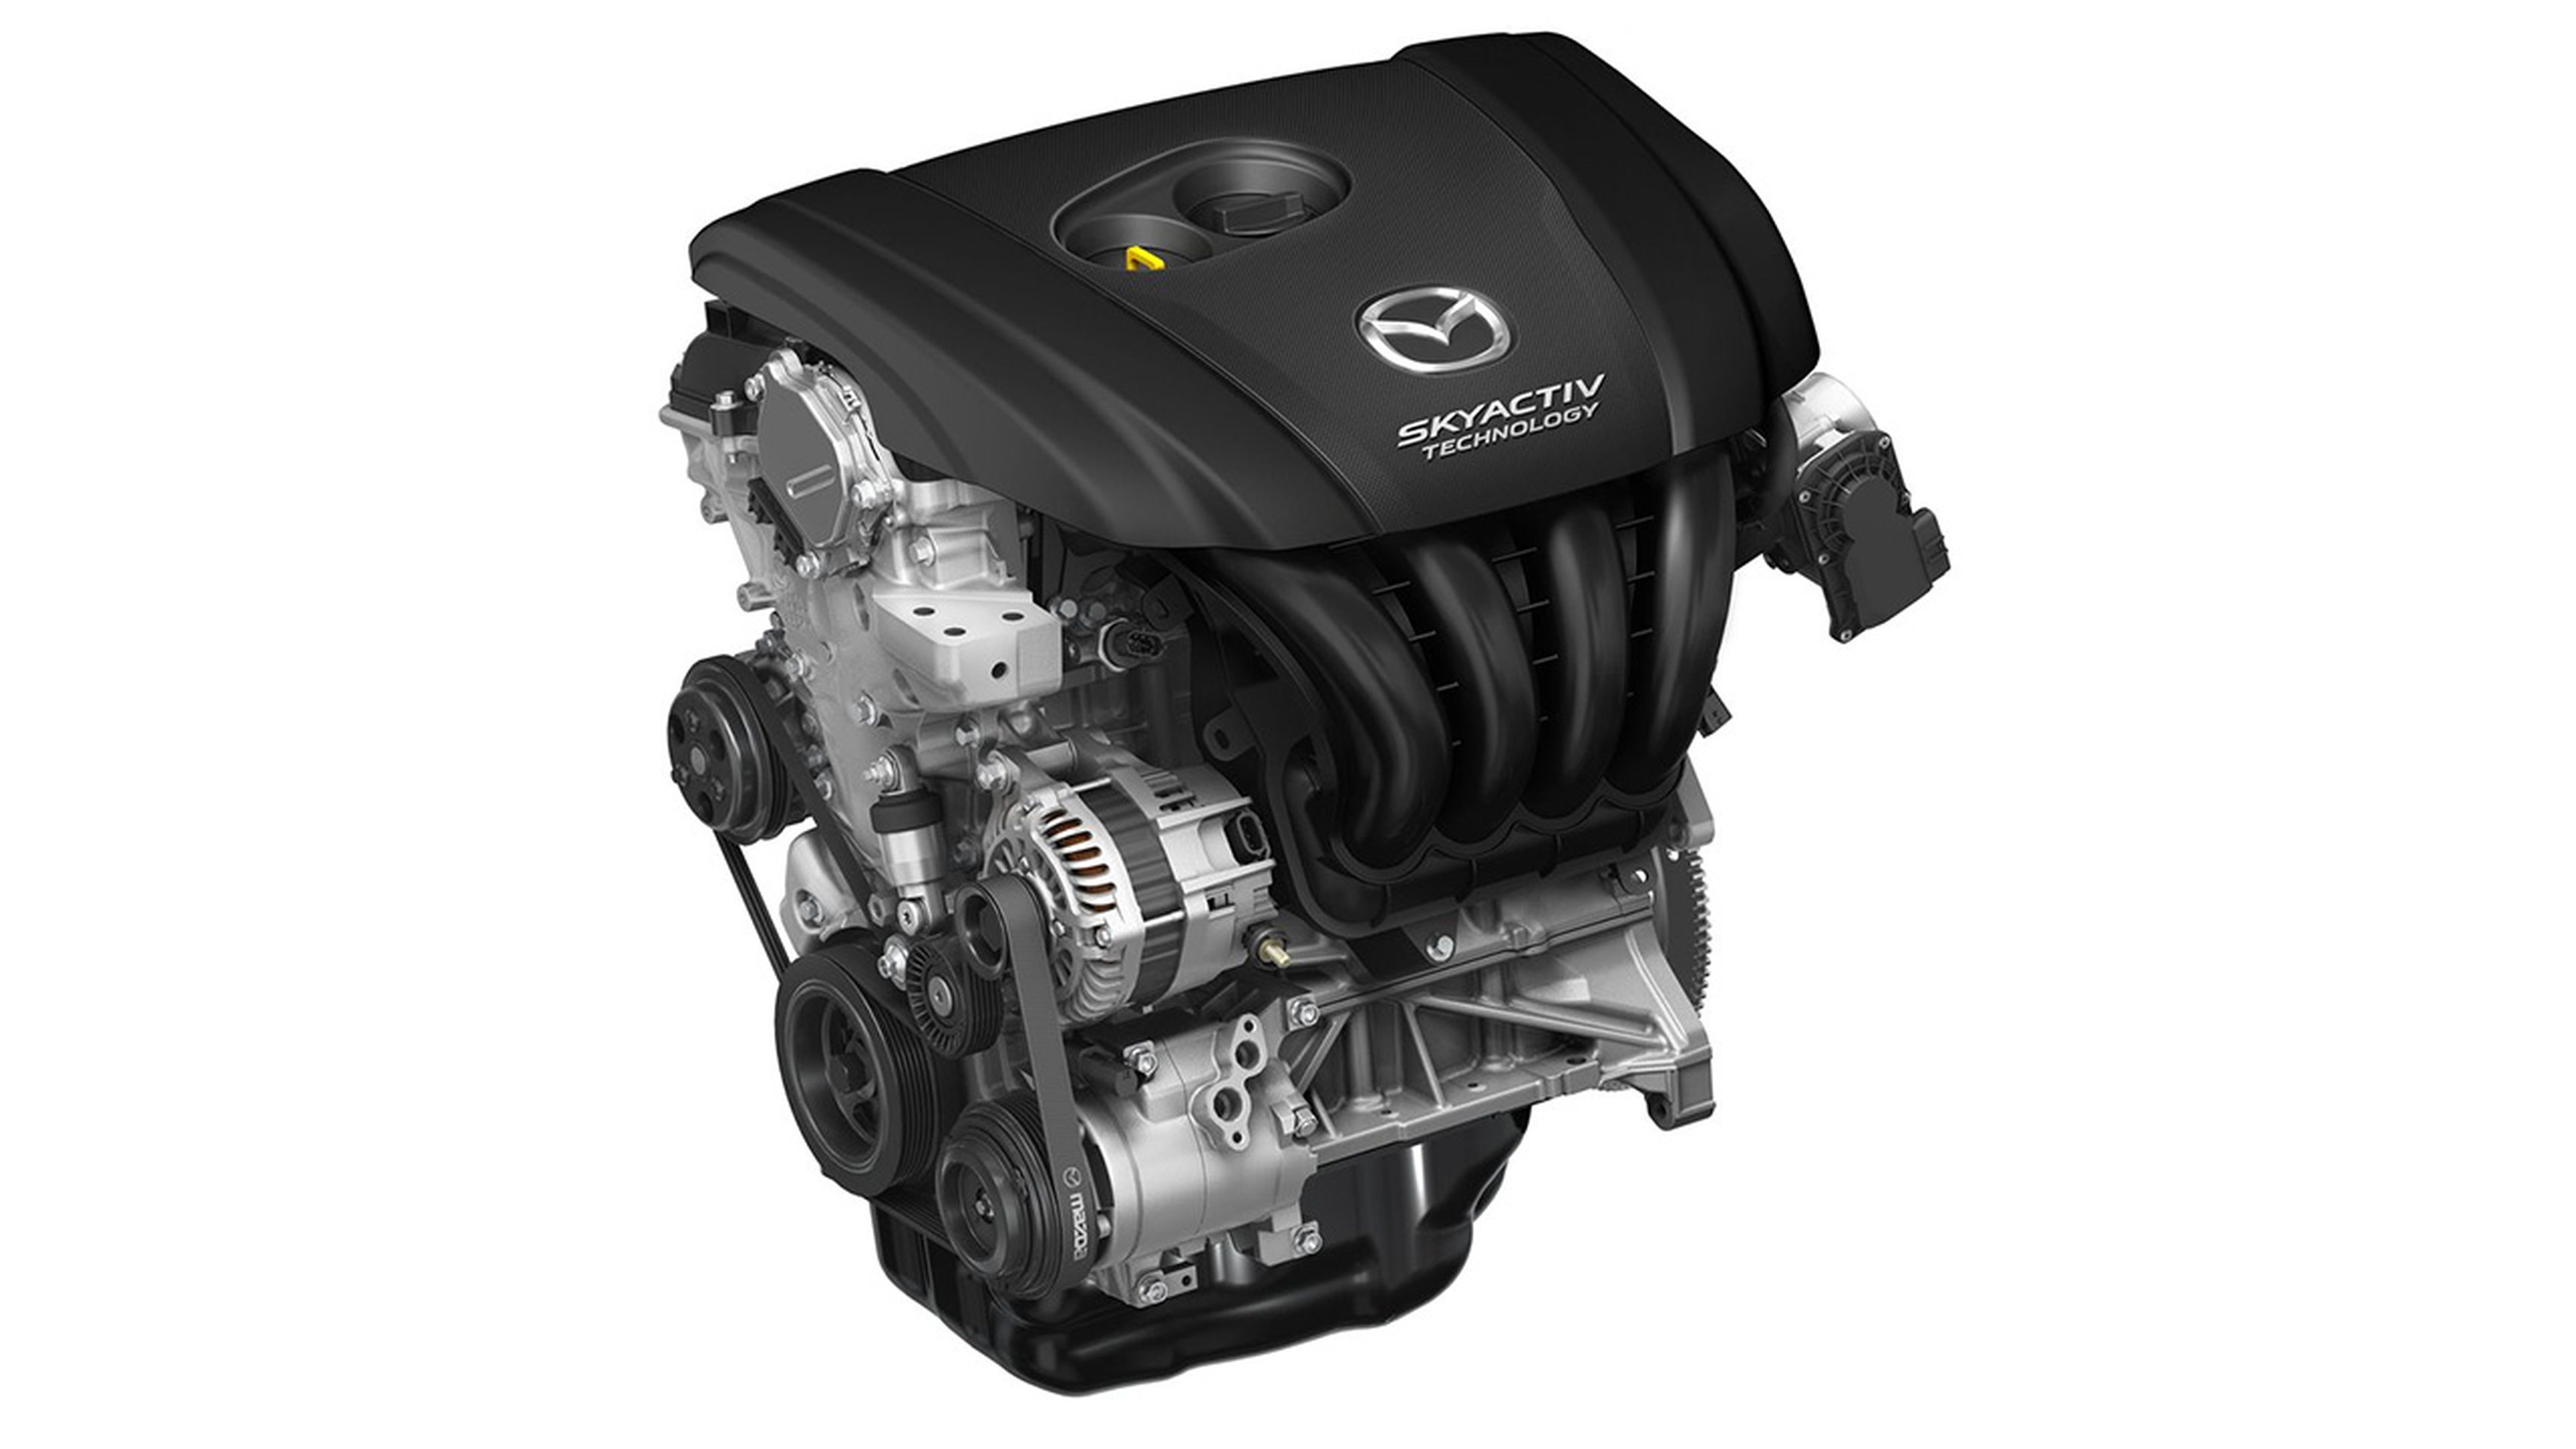 Virtudes y defecto Mazda6 2018